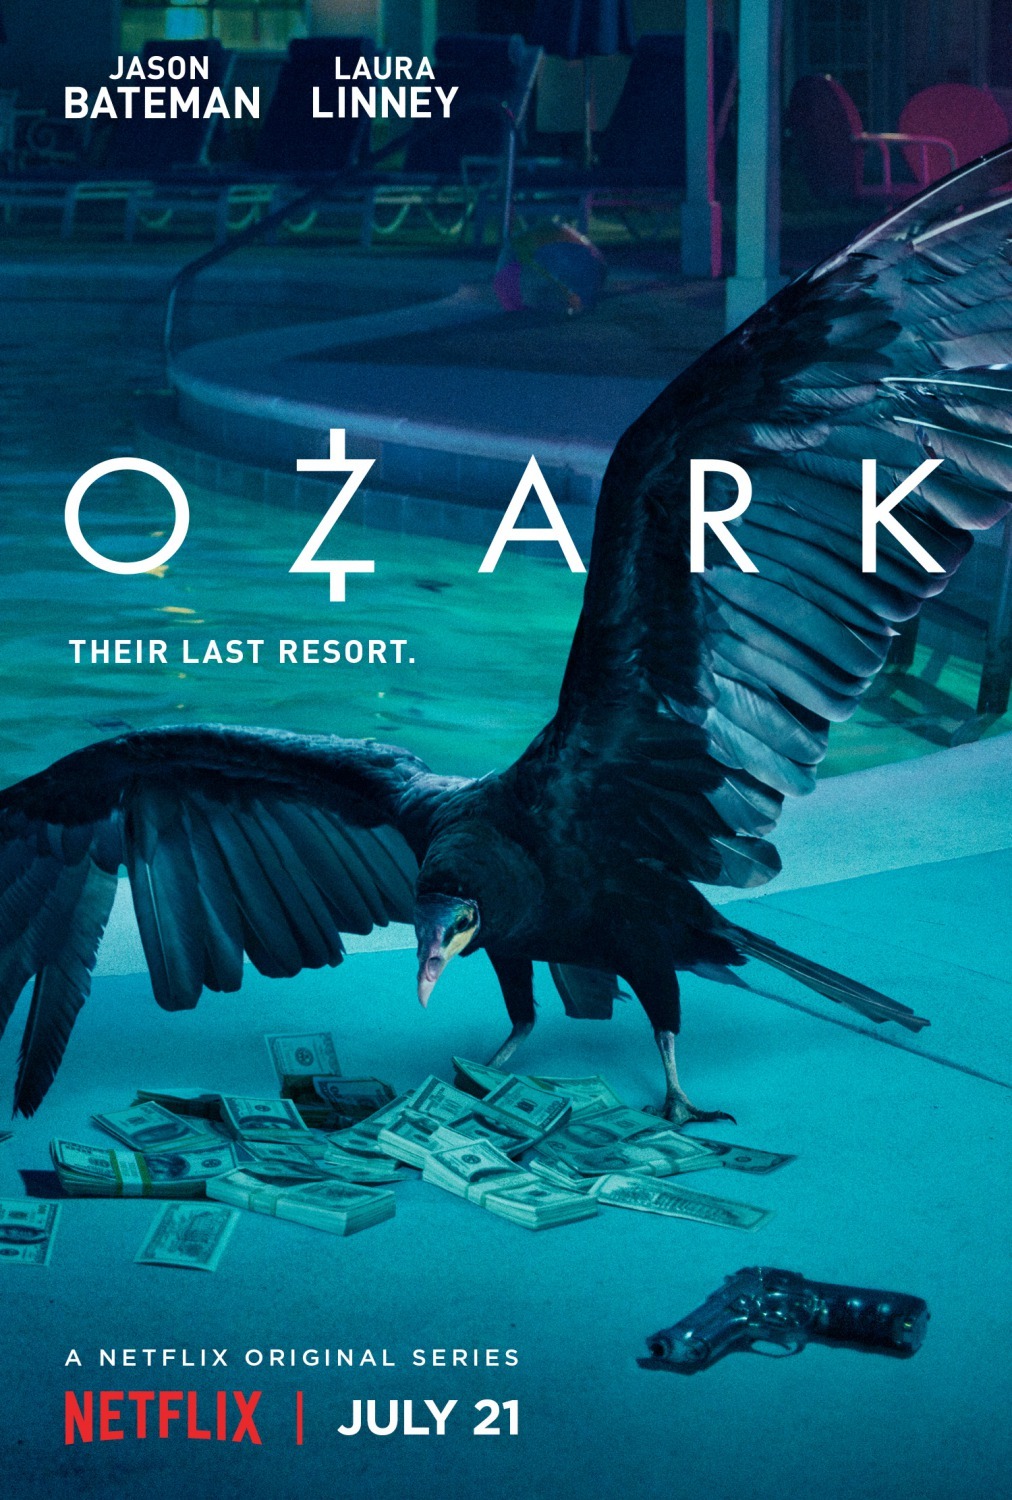 ดูหนังออนไลน์ฟรี Ozark Season 1 EP.8 โอซาร์ก ซีซั่น 1 ตอนที่ 8 (ซับไทย)